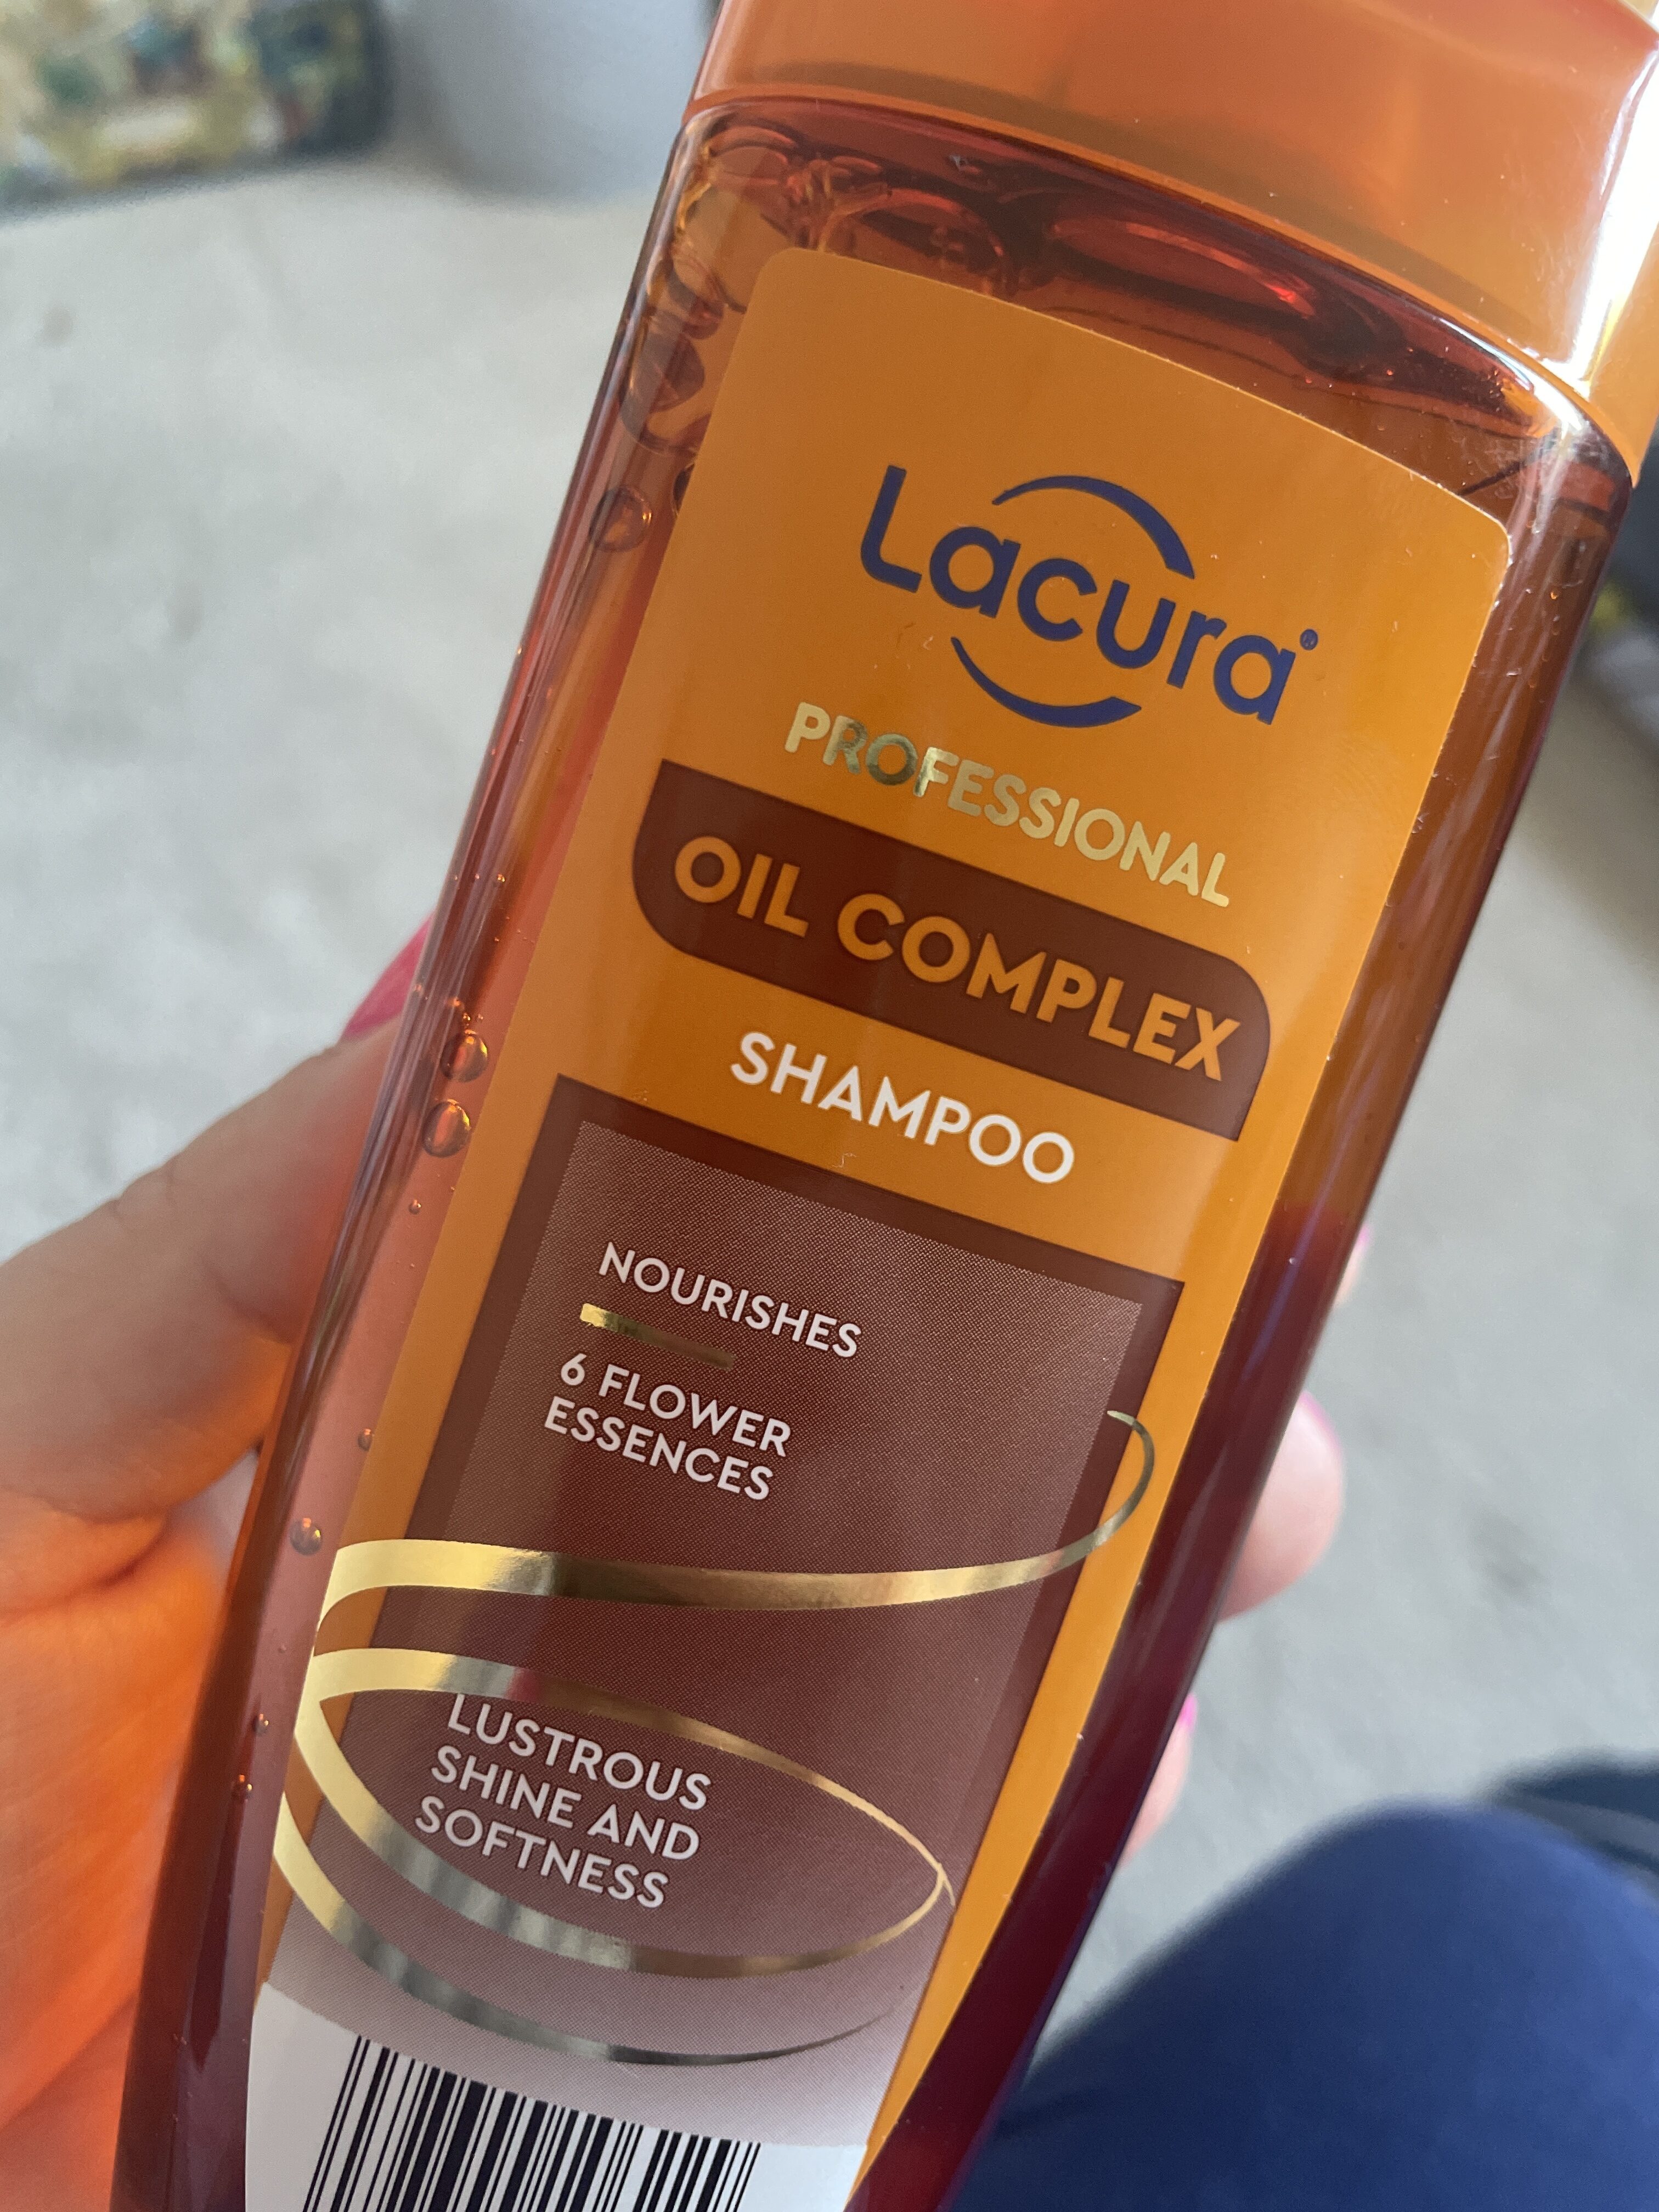 Oil complex shampoo - Product - en